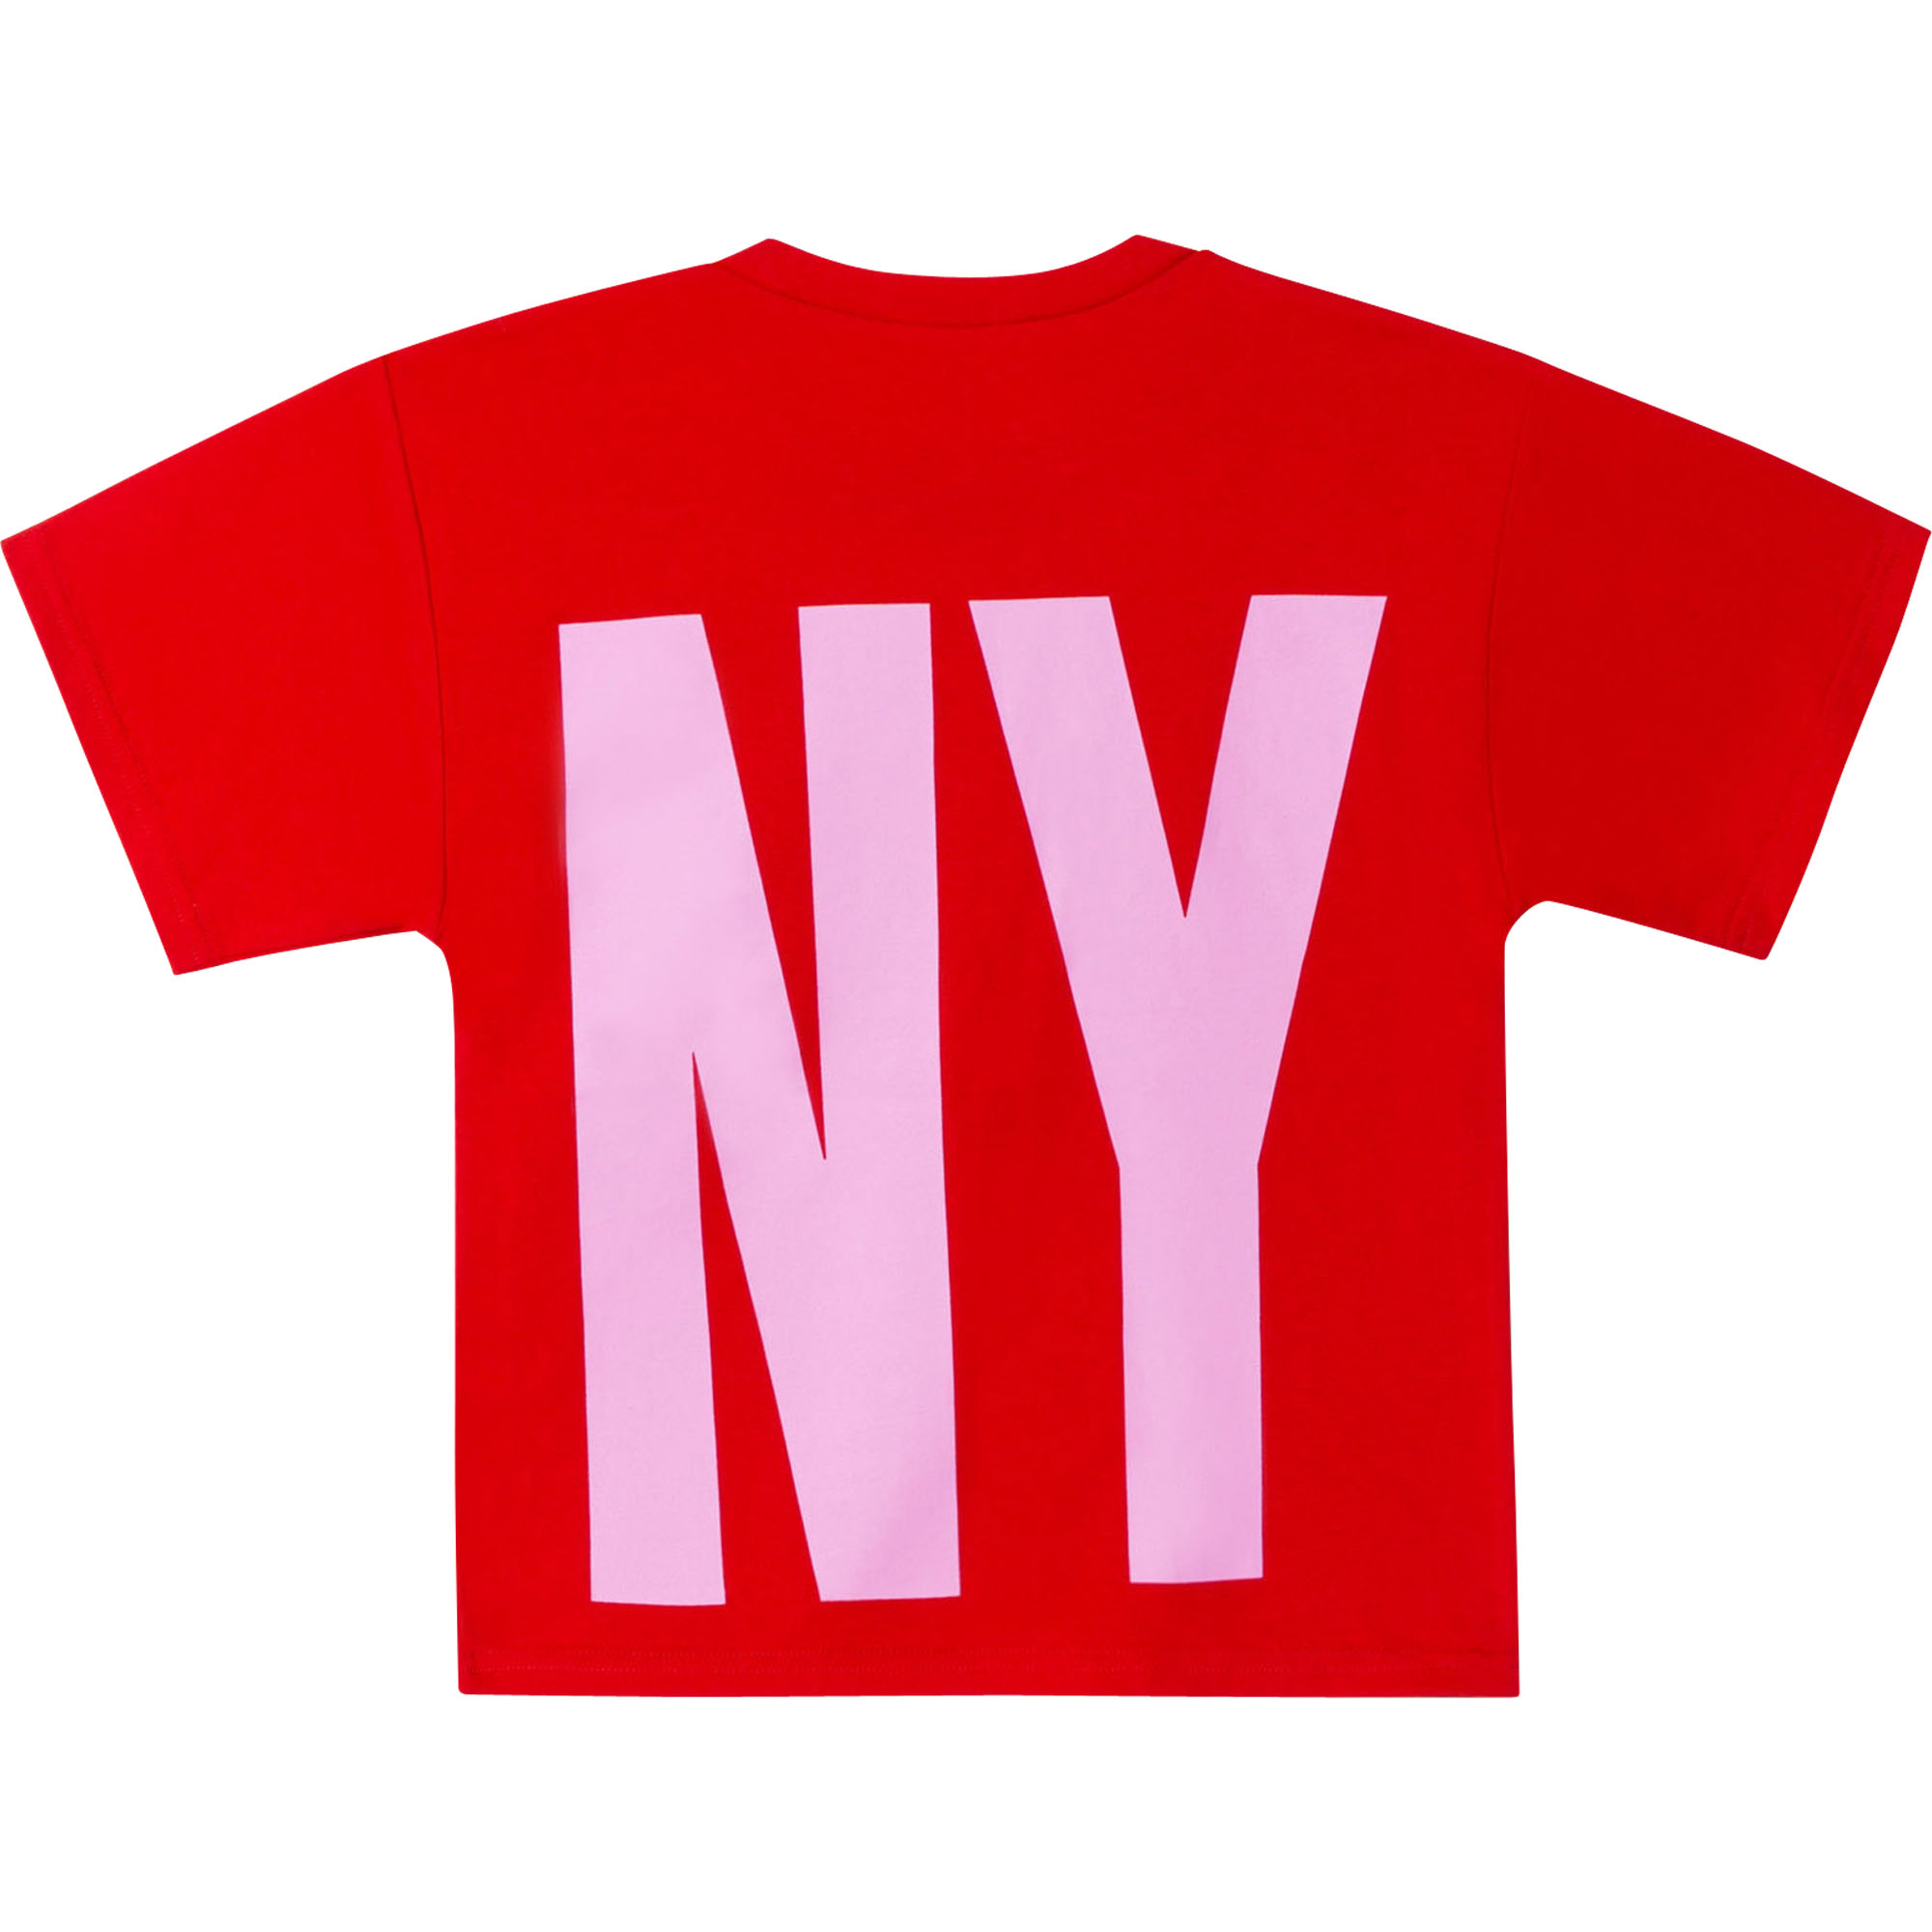 Camiseta de algodón con logo DKNY para NIÑA